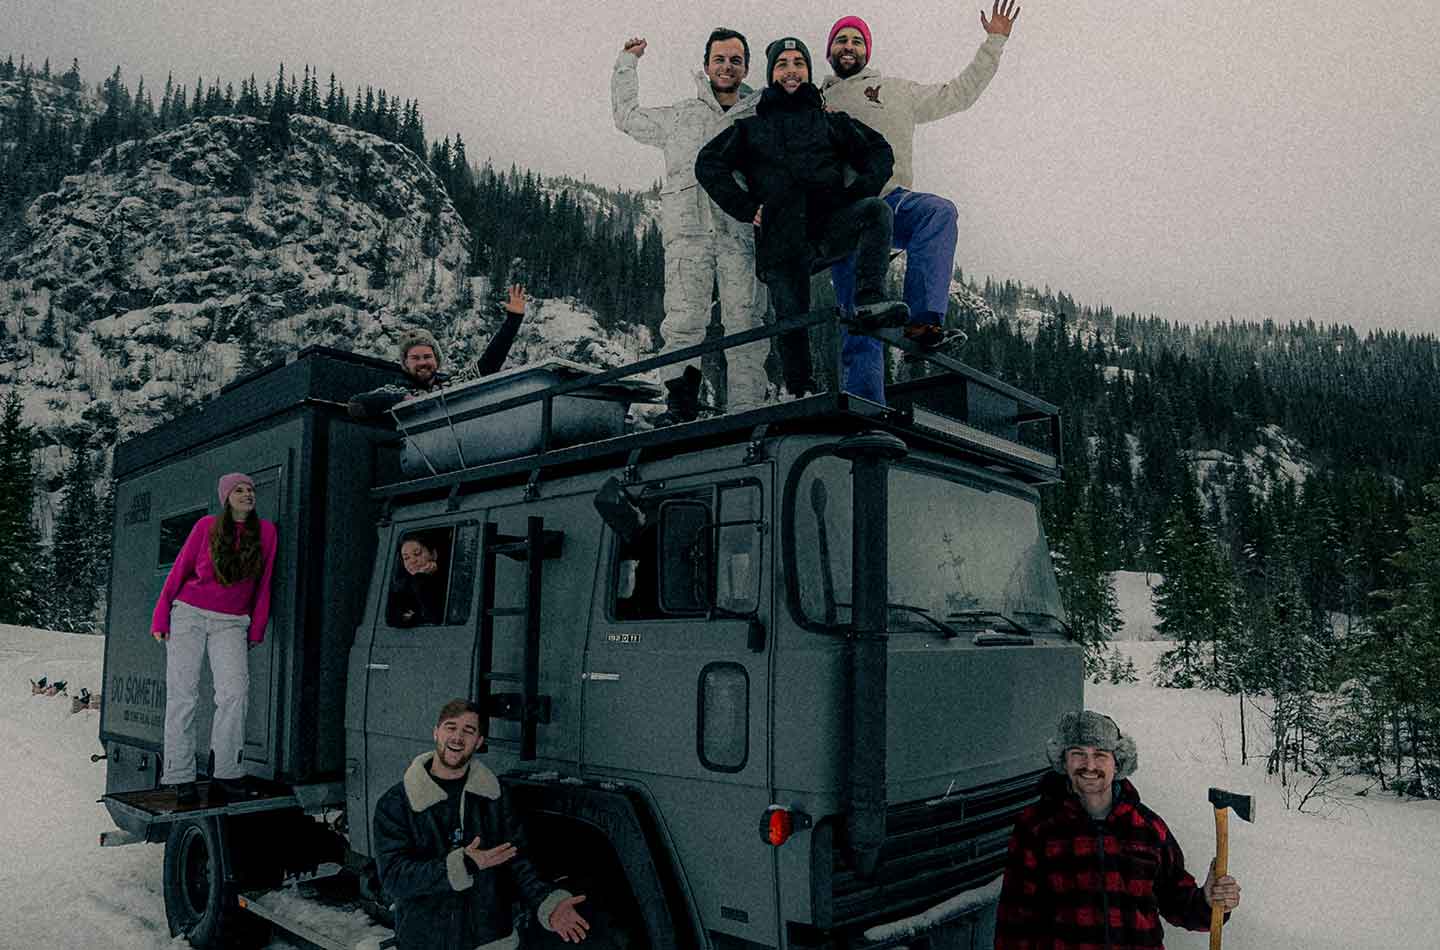 Menschen auf einem Truck in Schneelandschaft.